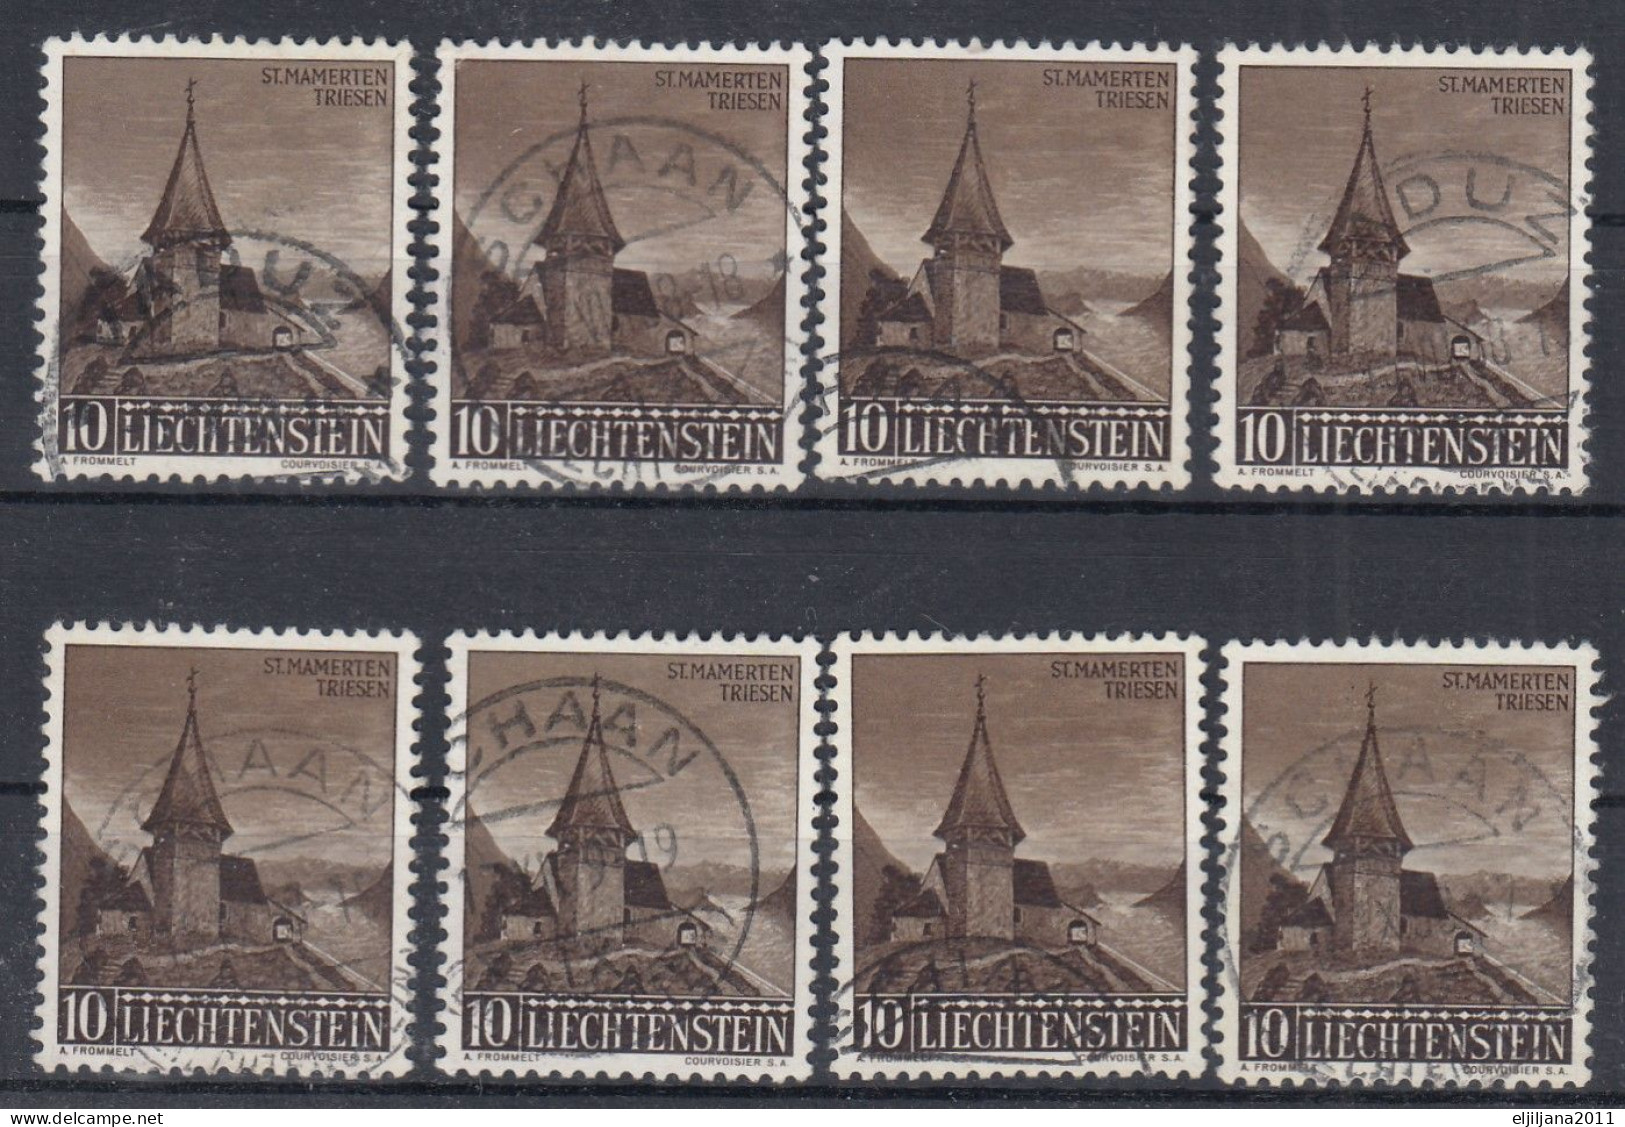 ⁕ Liechtenstein 1957 ⁕ Kapelle St. Mamerten Triesen Mi.362 ⁕ 8v Used - Usati